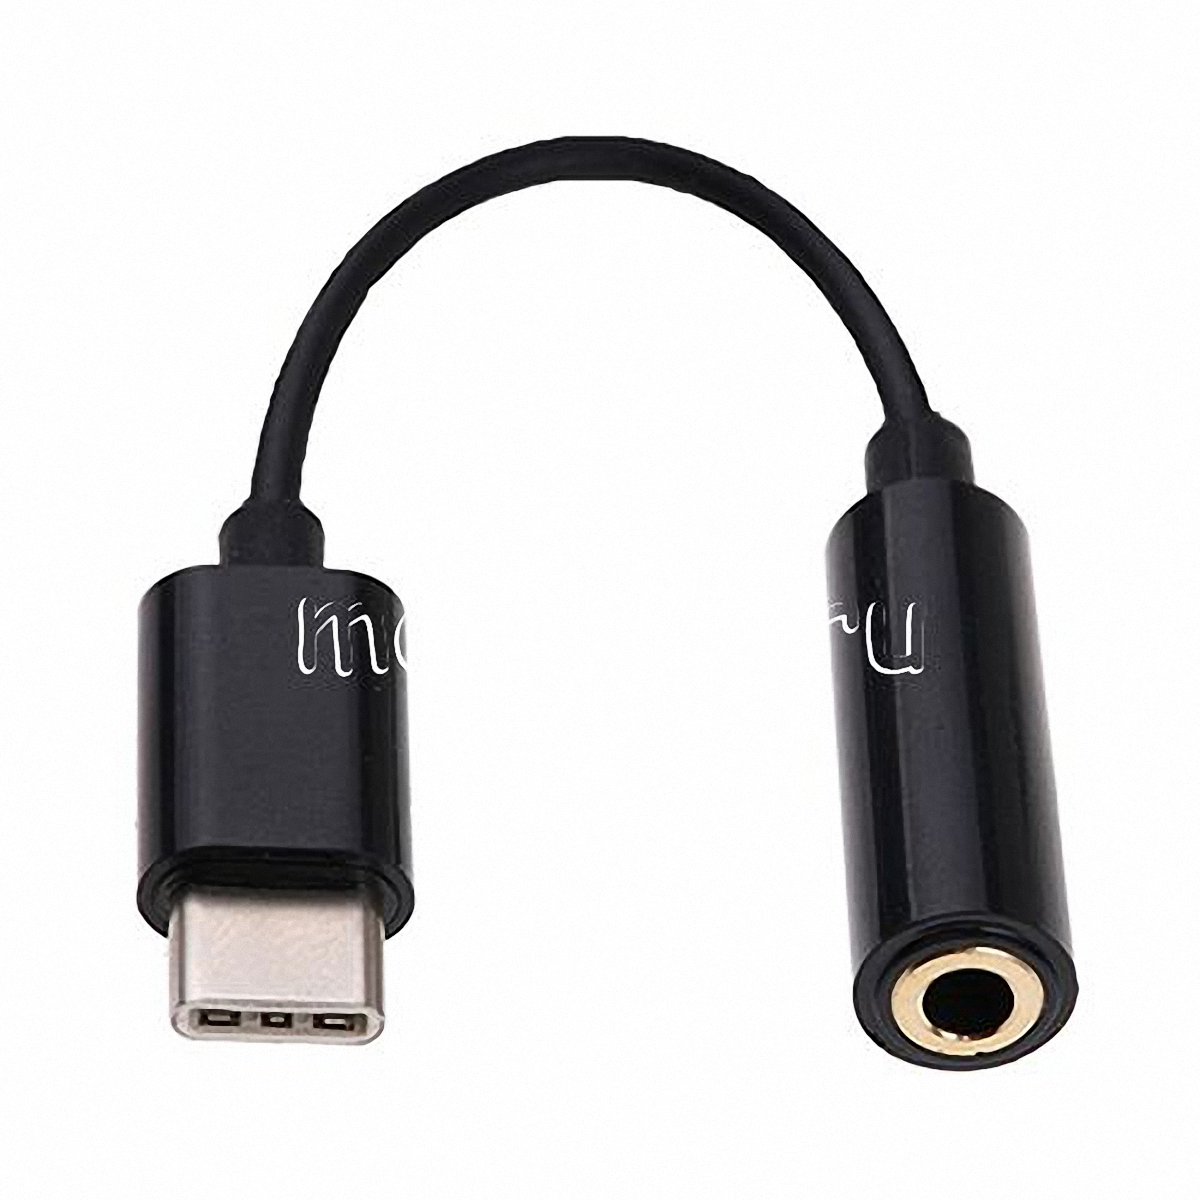 Кабель Baseus USB Type-C - mini jack 3.5 mm (M01) 1.2 м (серебристый)